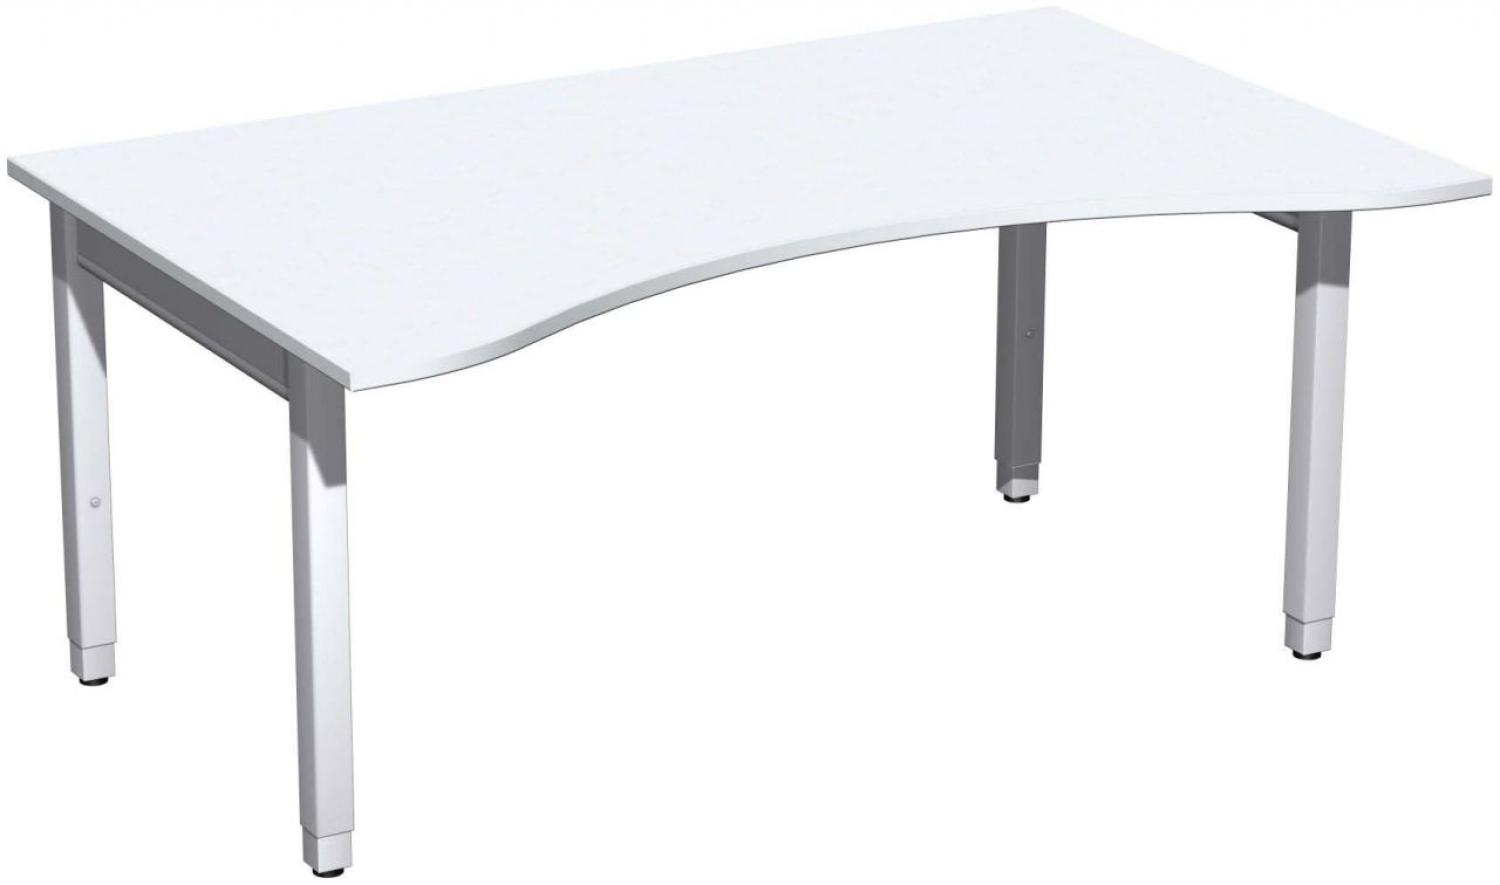 Schreibtisch '4 Fuß Pro Quadrat' Ergonomieform höhenverstellbar, 160x100x68-86cm, Weiß / Silber Bild 1